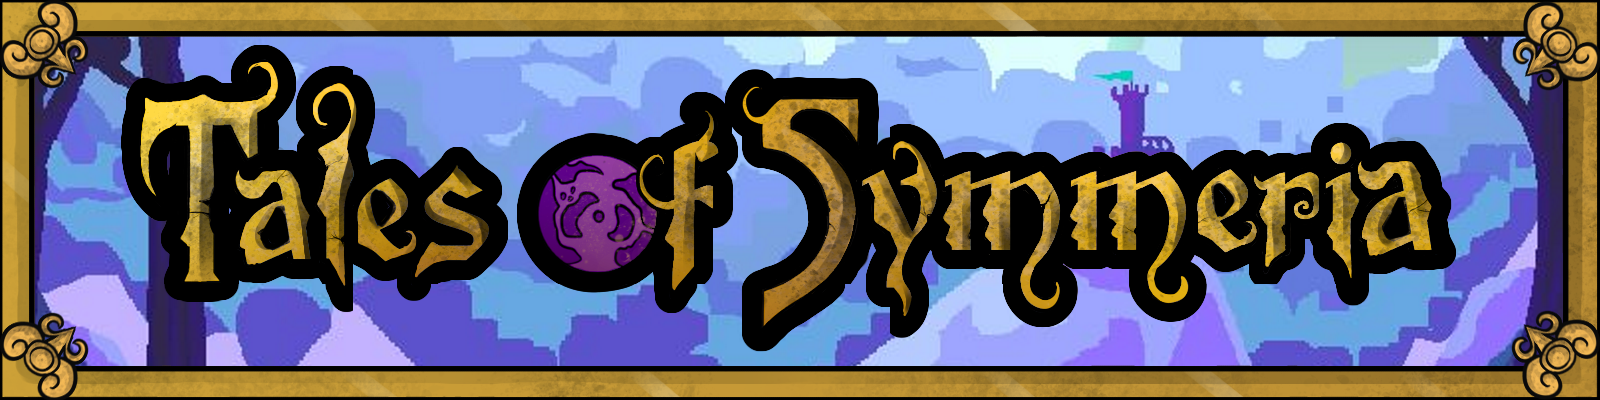 Tales of Symmeria v0.4.1